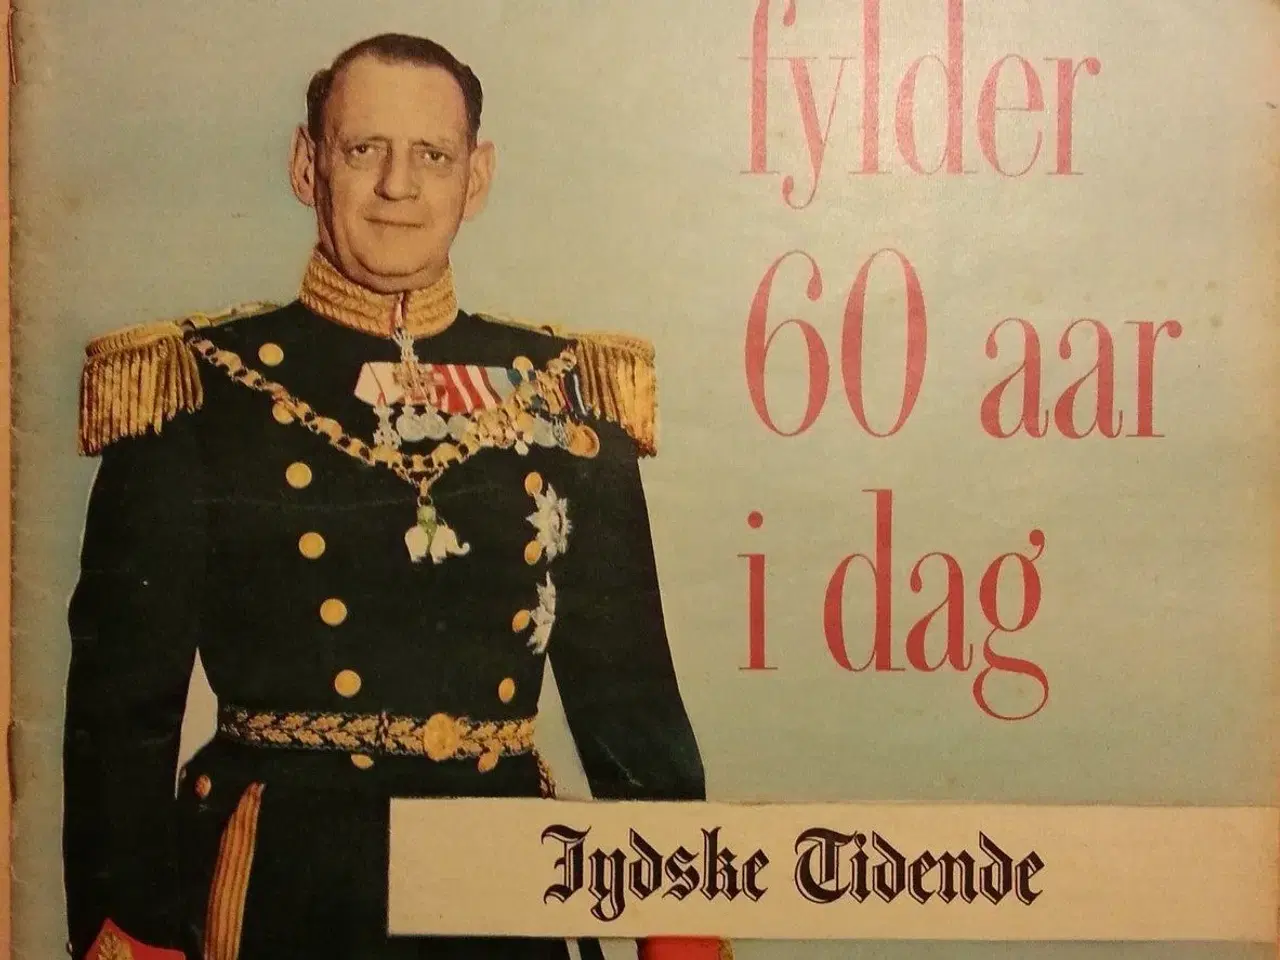 Billede 1 - Tillæg fra Jydske Tidende.